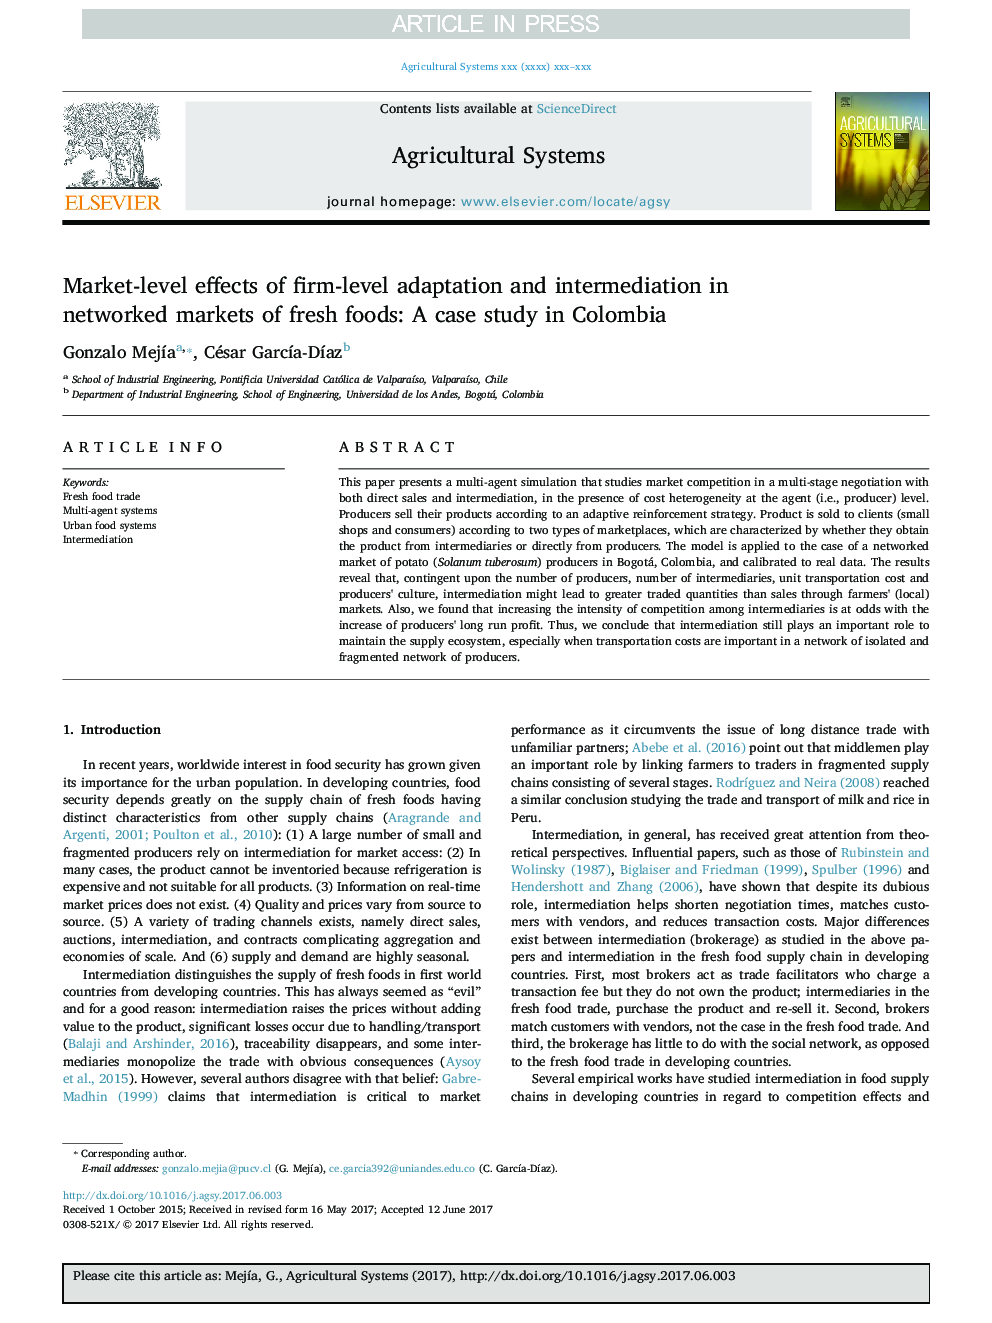 اثرات سطح در سطح سازمانی و میانجیگری در سطح شرکت در بازارهای شبکه های غذایی تازه: مطالعه موردی در 